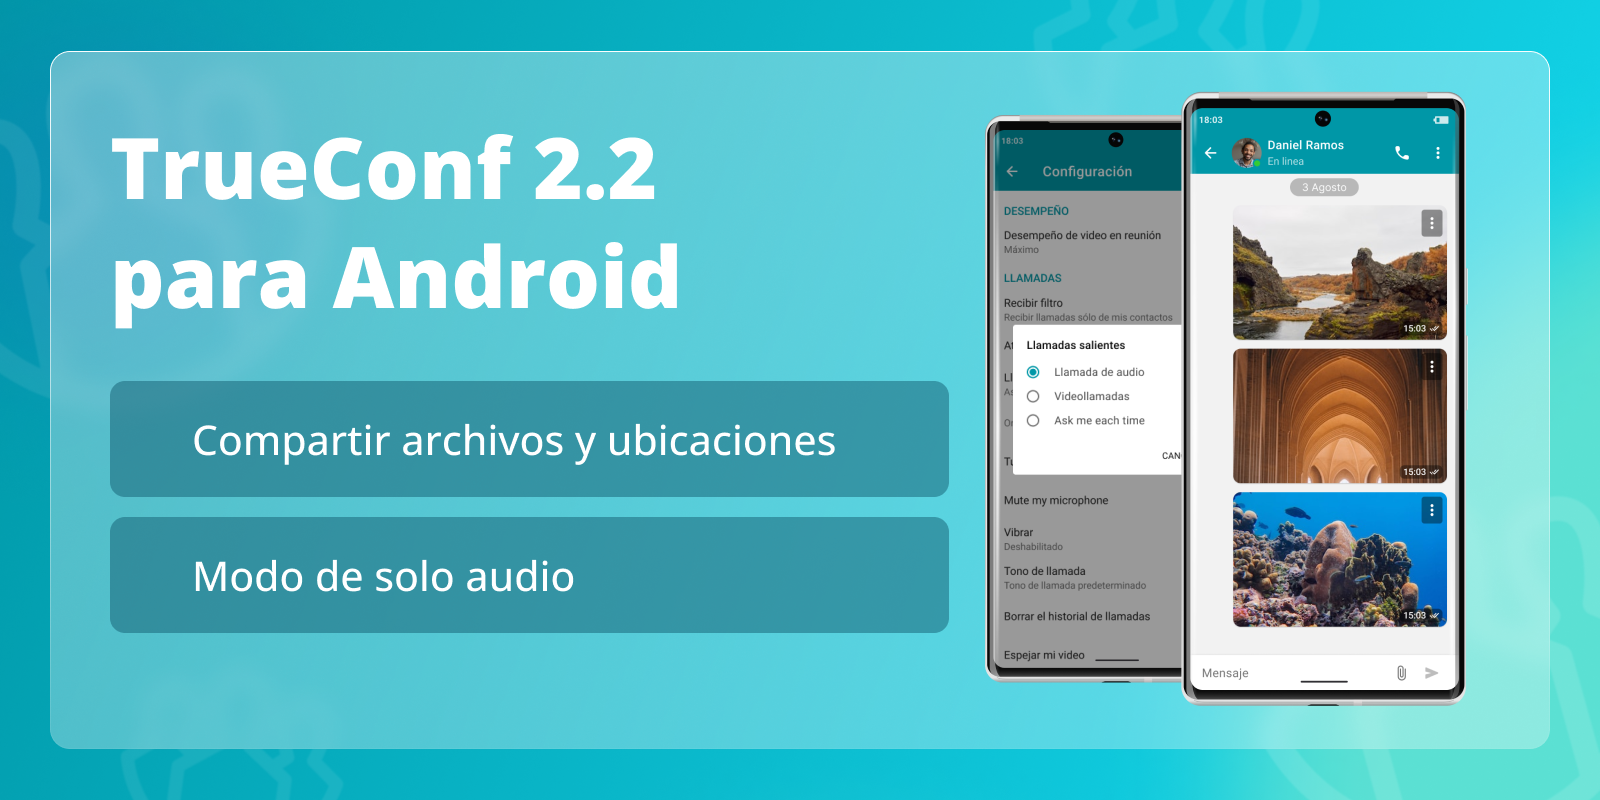 TrueConf 2.2 para Android: modo de solo audio y compartir archivos 1